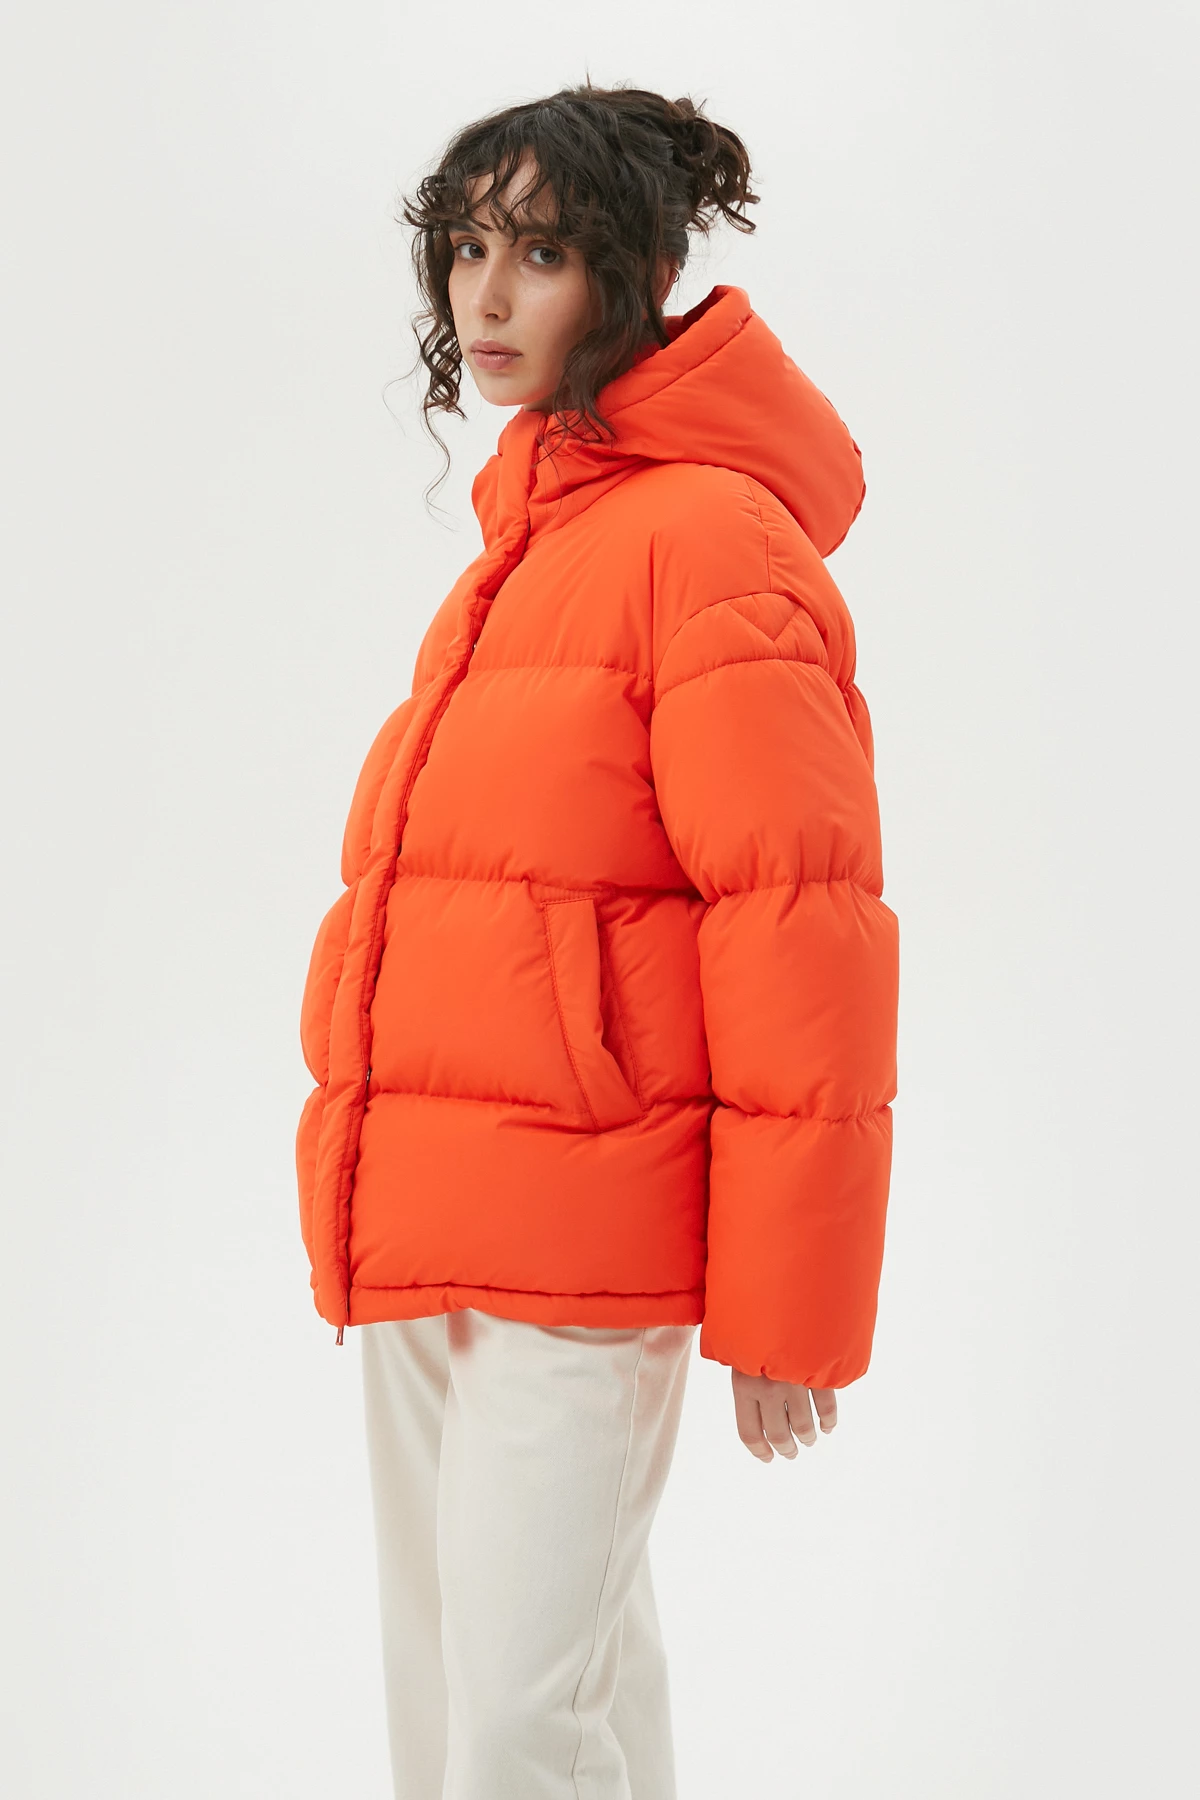 Оранжевая стеганая куртка с утеплителем экопух, фото 2